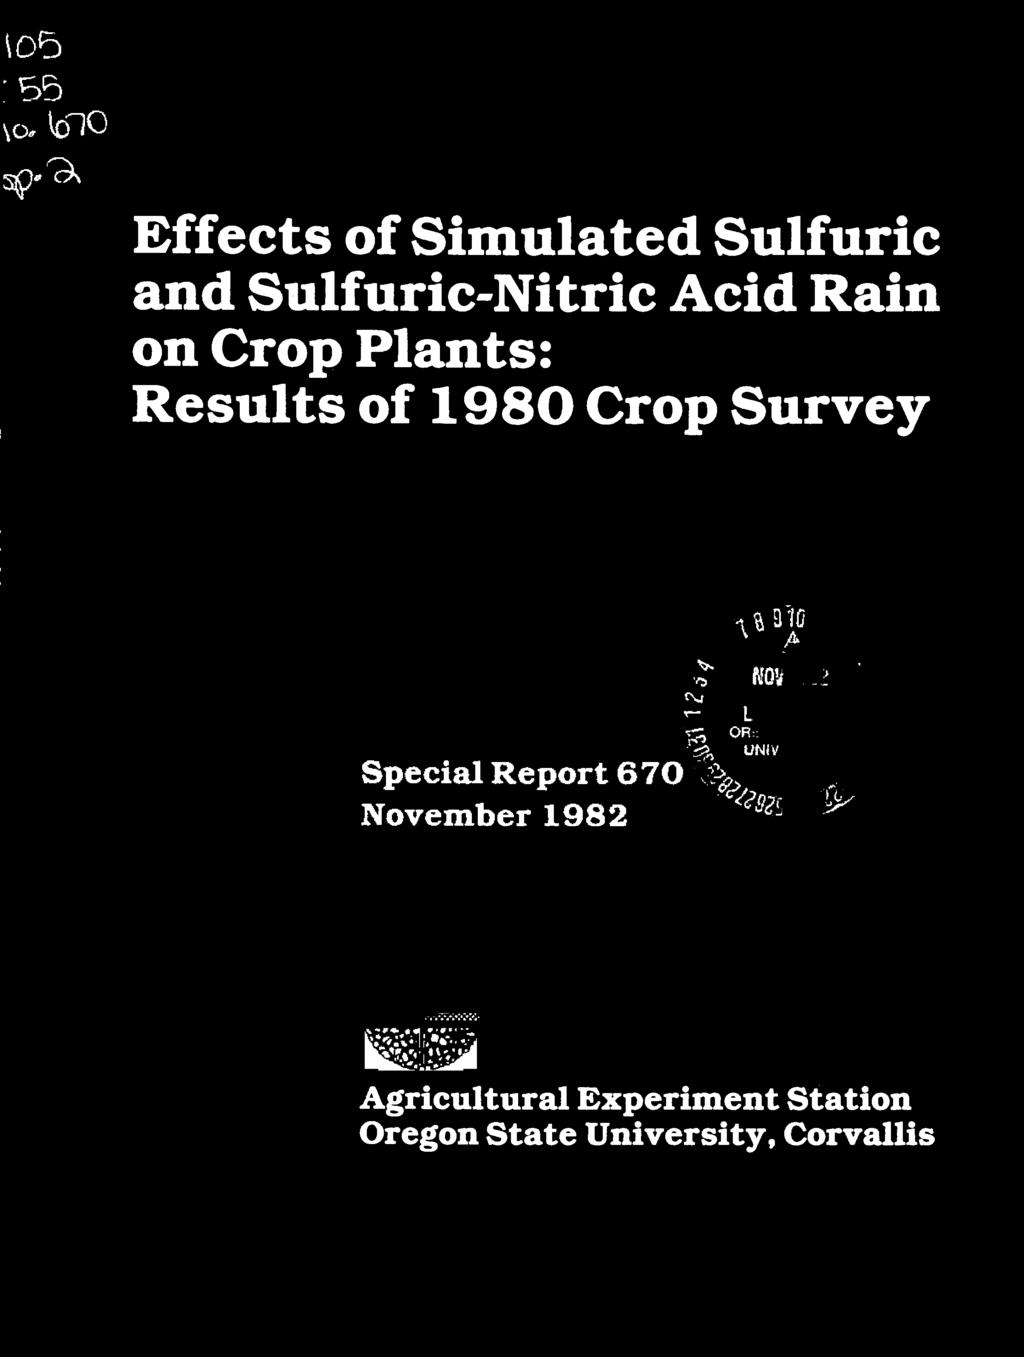 Crop Survey 3:10 tn4 r Special Report 670 November 1982 1.